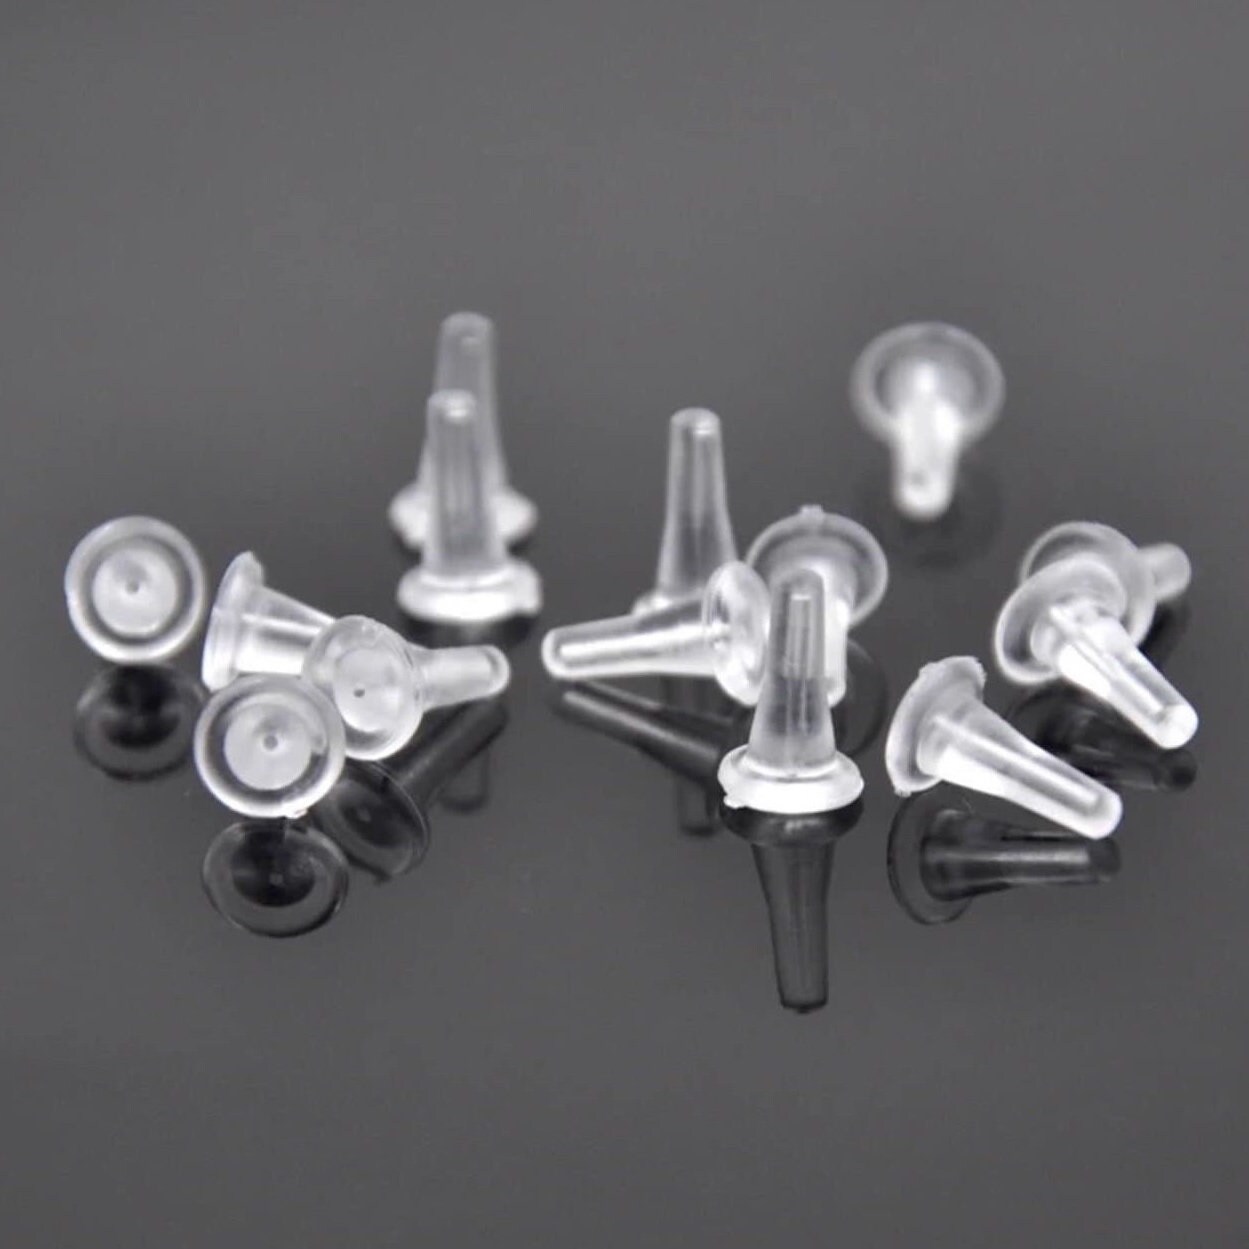 100pcs/lot 316L Stainless Steel Hypoallergenic Earring Backs Ear Nuts  Wholesale Earring Stoppers for DIY Earring